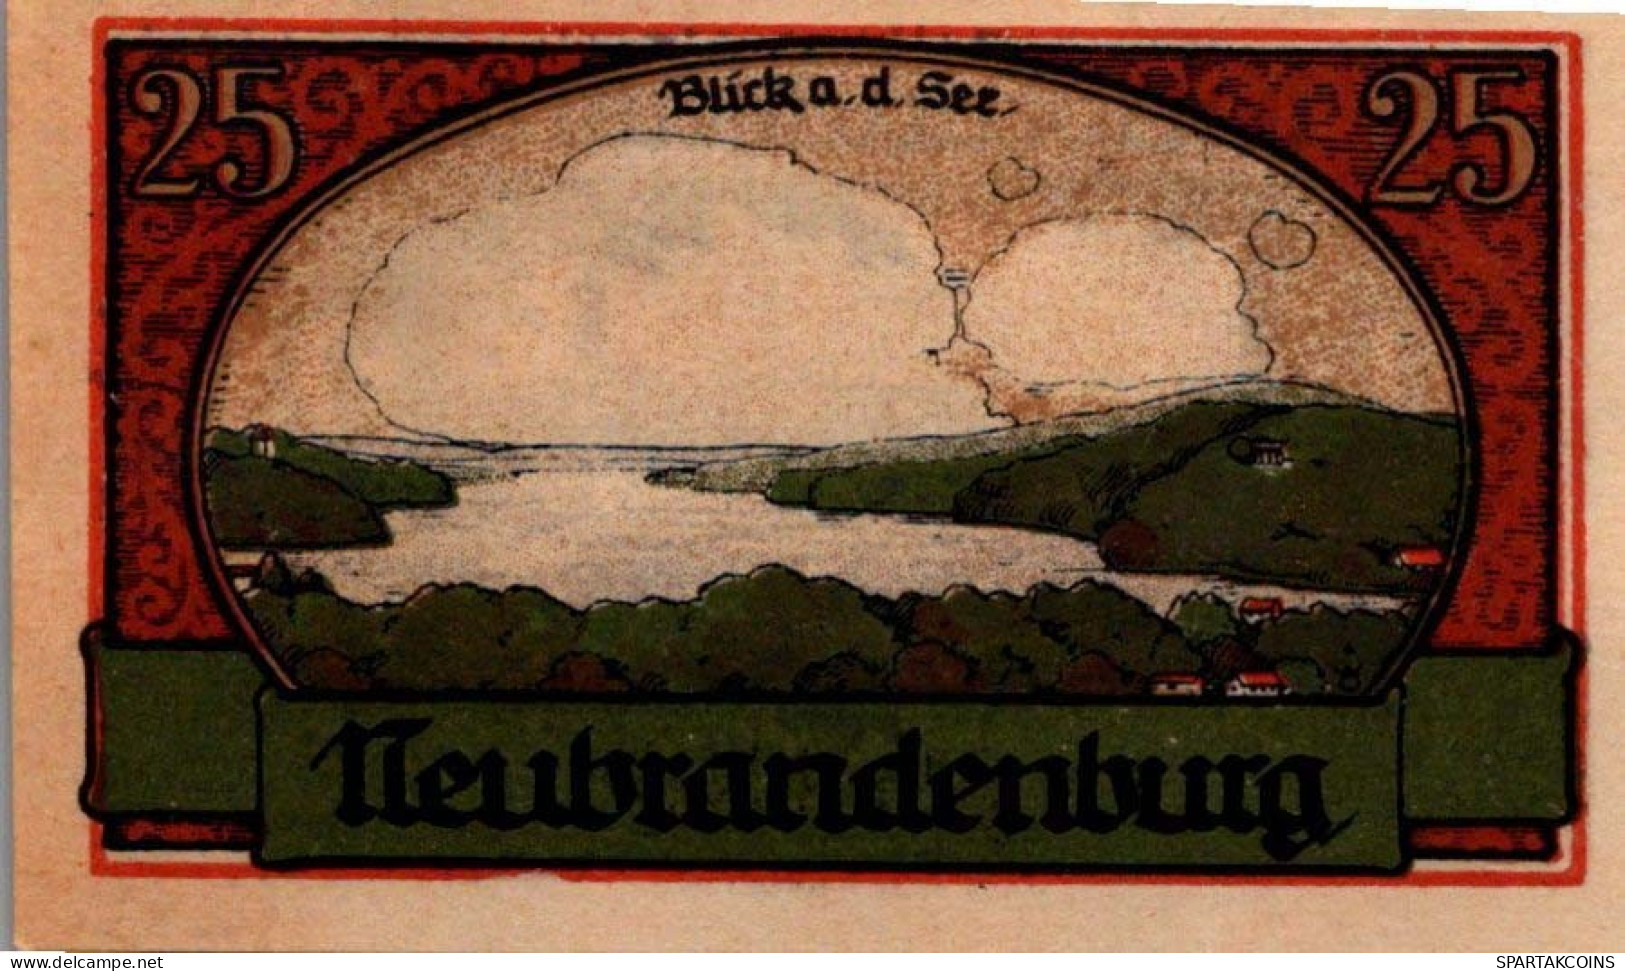 25 PFENNIG 1922 Stadt NEUBRANDENBURG Mecklenburg-Strelitz UNC DEUTSCHLAND #PI798 - [11] Local Banknote Issues